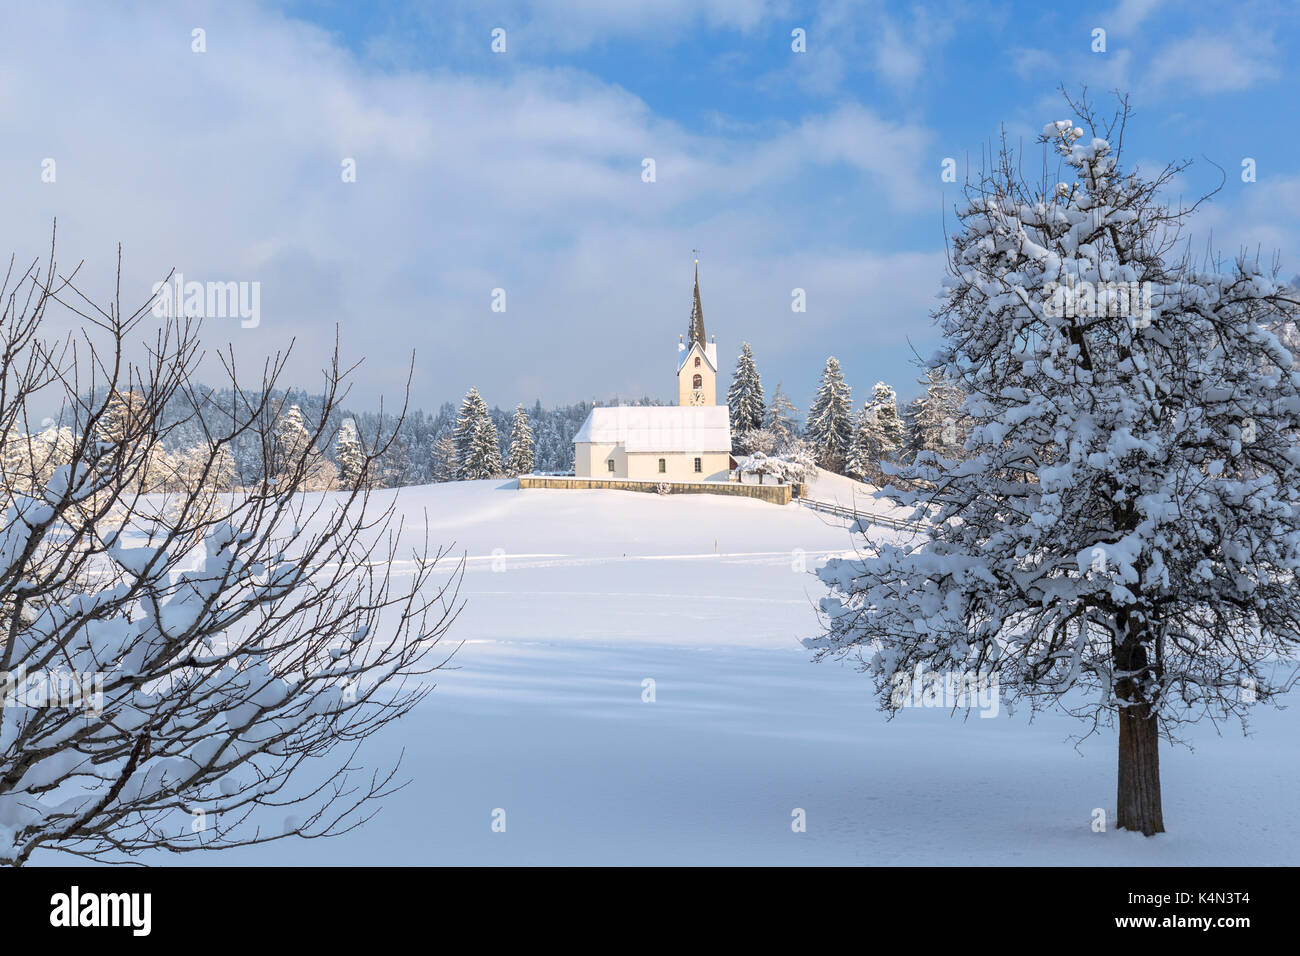 Il sole illumina la chiesa di versam dopo una nevicata, versam, safiental, surselva, Grigioni, Svizzera, Europa Foto Stock